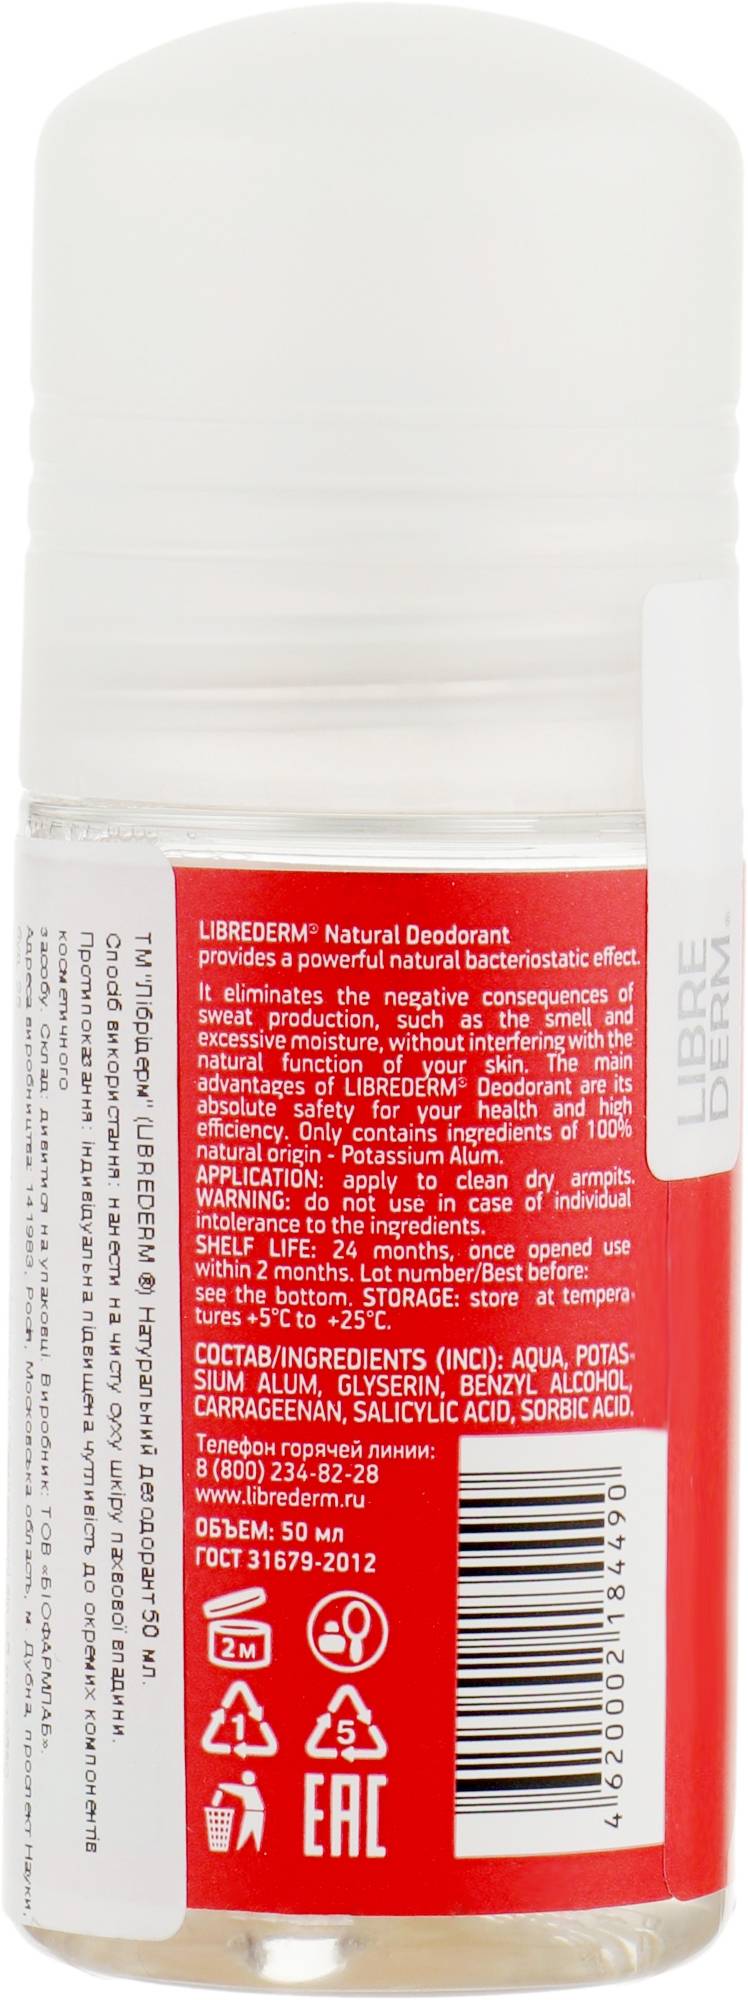 Натуральный дезодорант Librederm, 50 ml, изображение 2